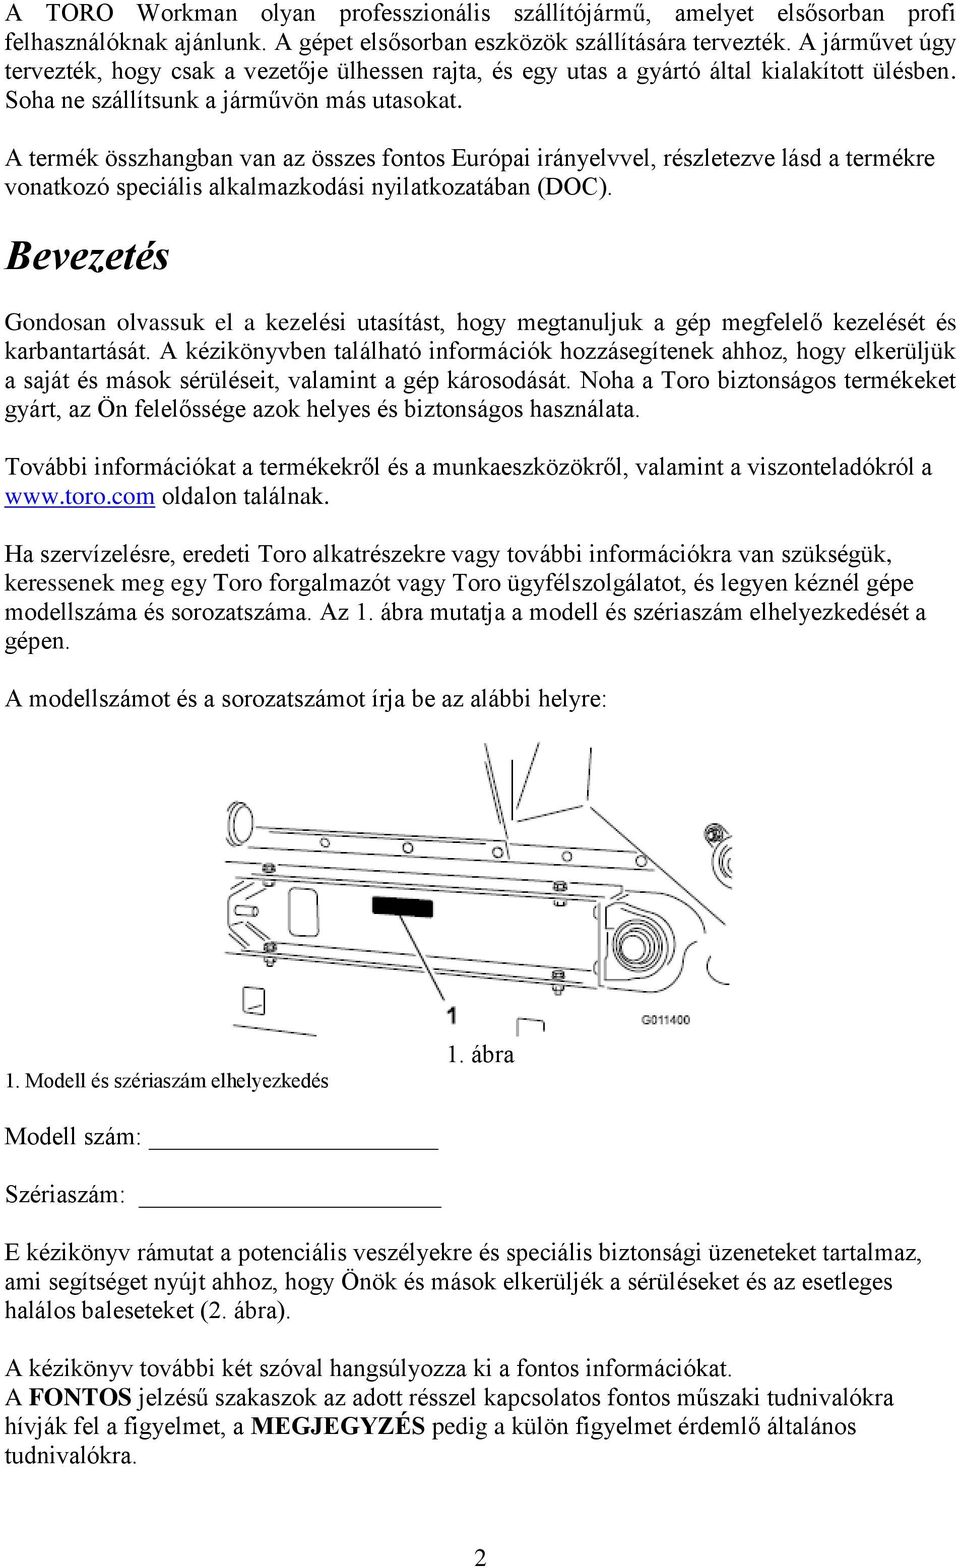 Kezelési és karbantartási utasítás - PDF Ingyenes letöltés